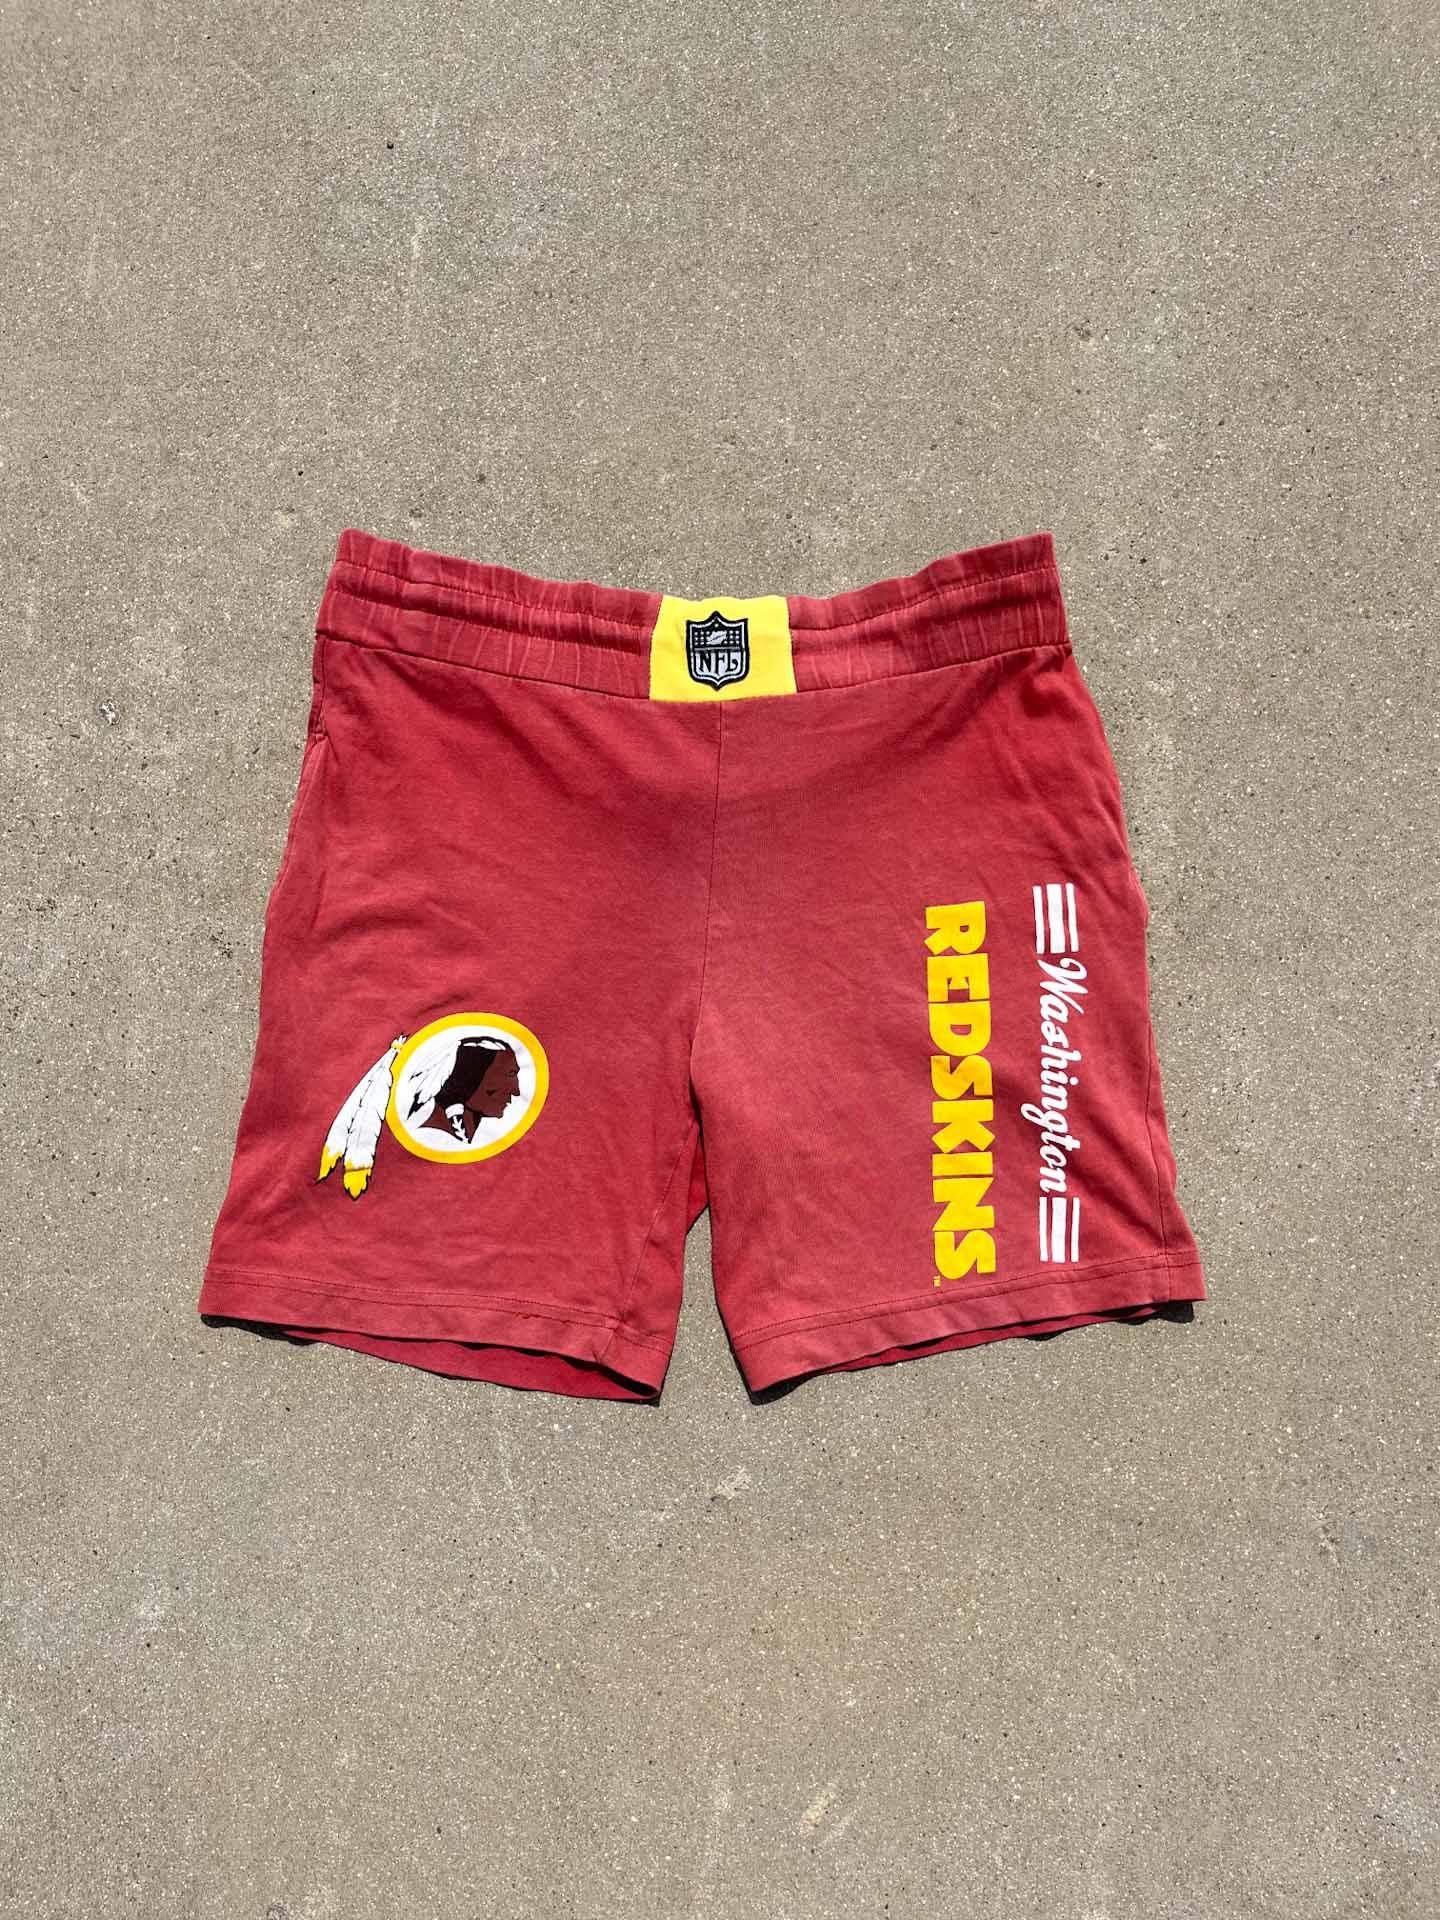 NFL Campri Redskins Shorts - secondvintage